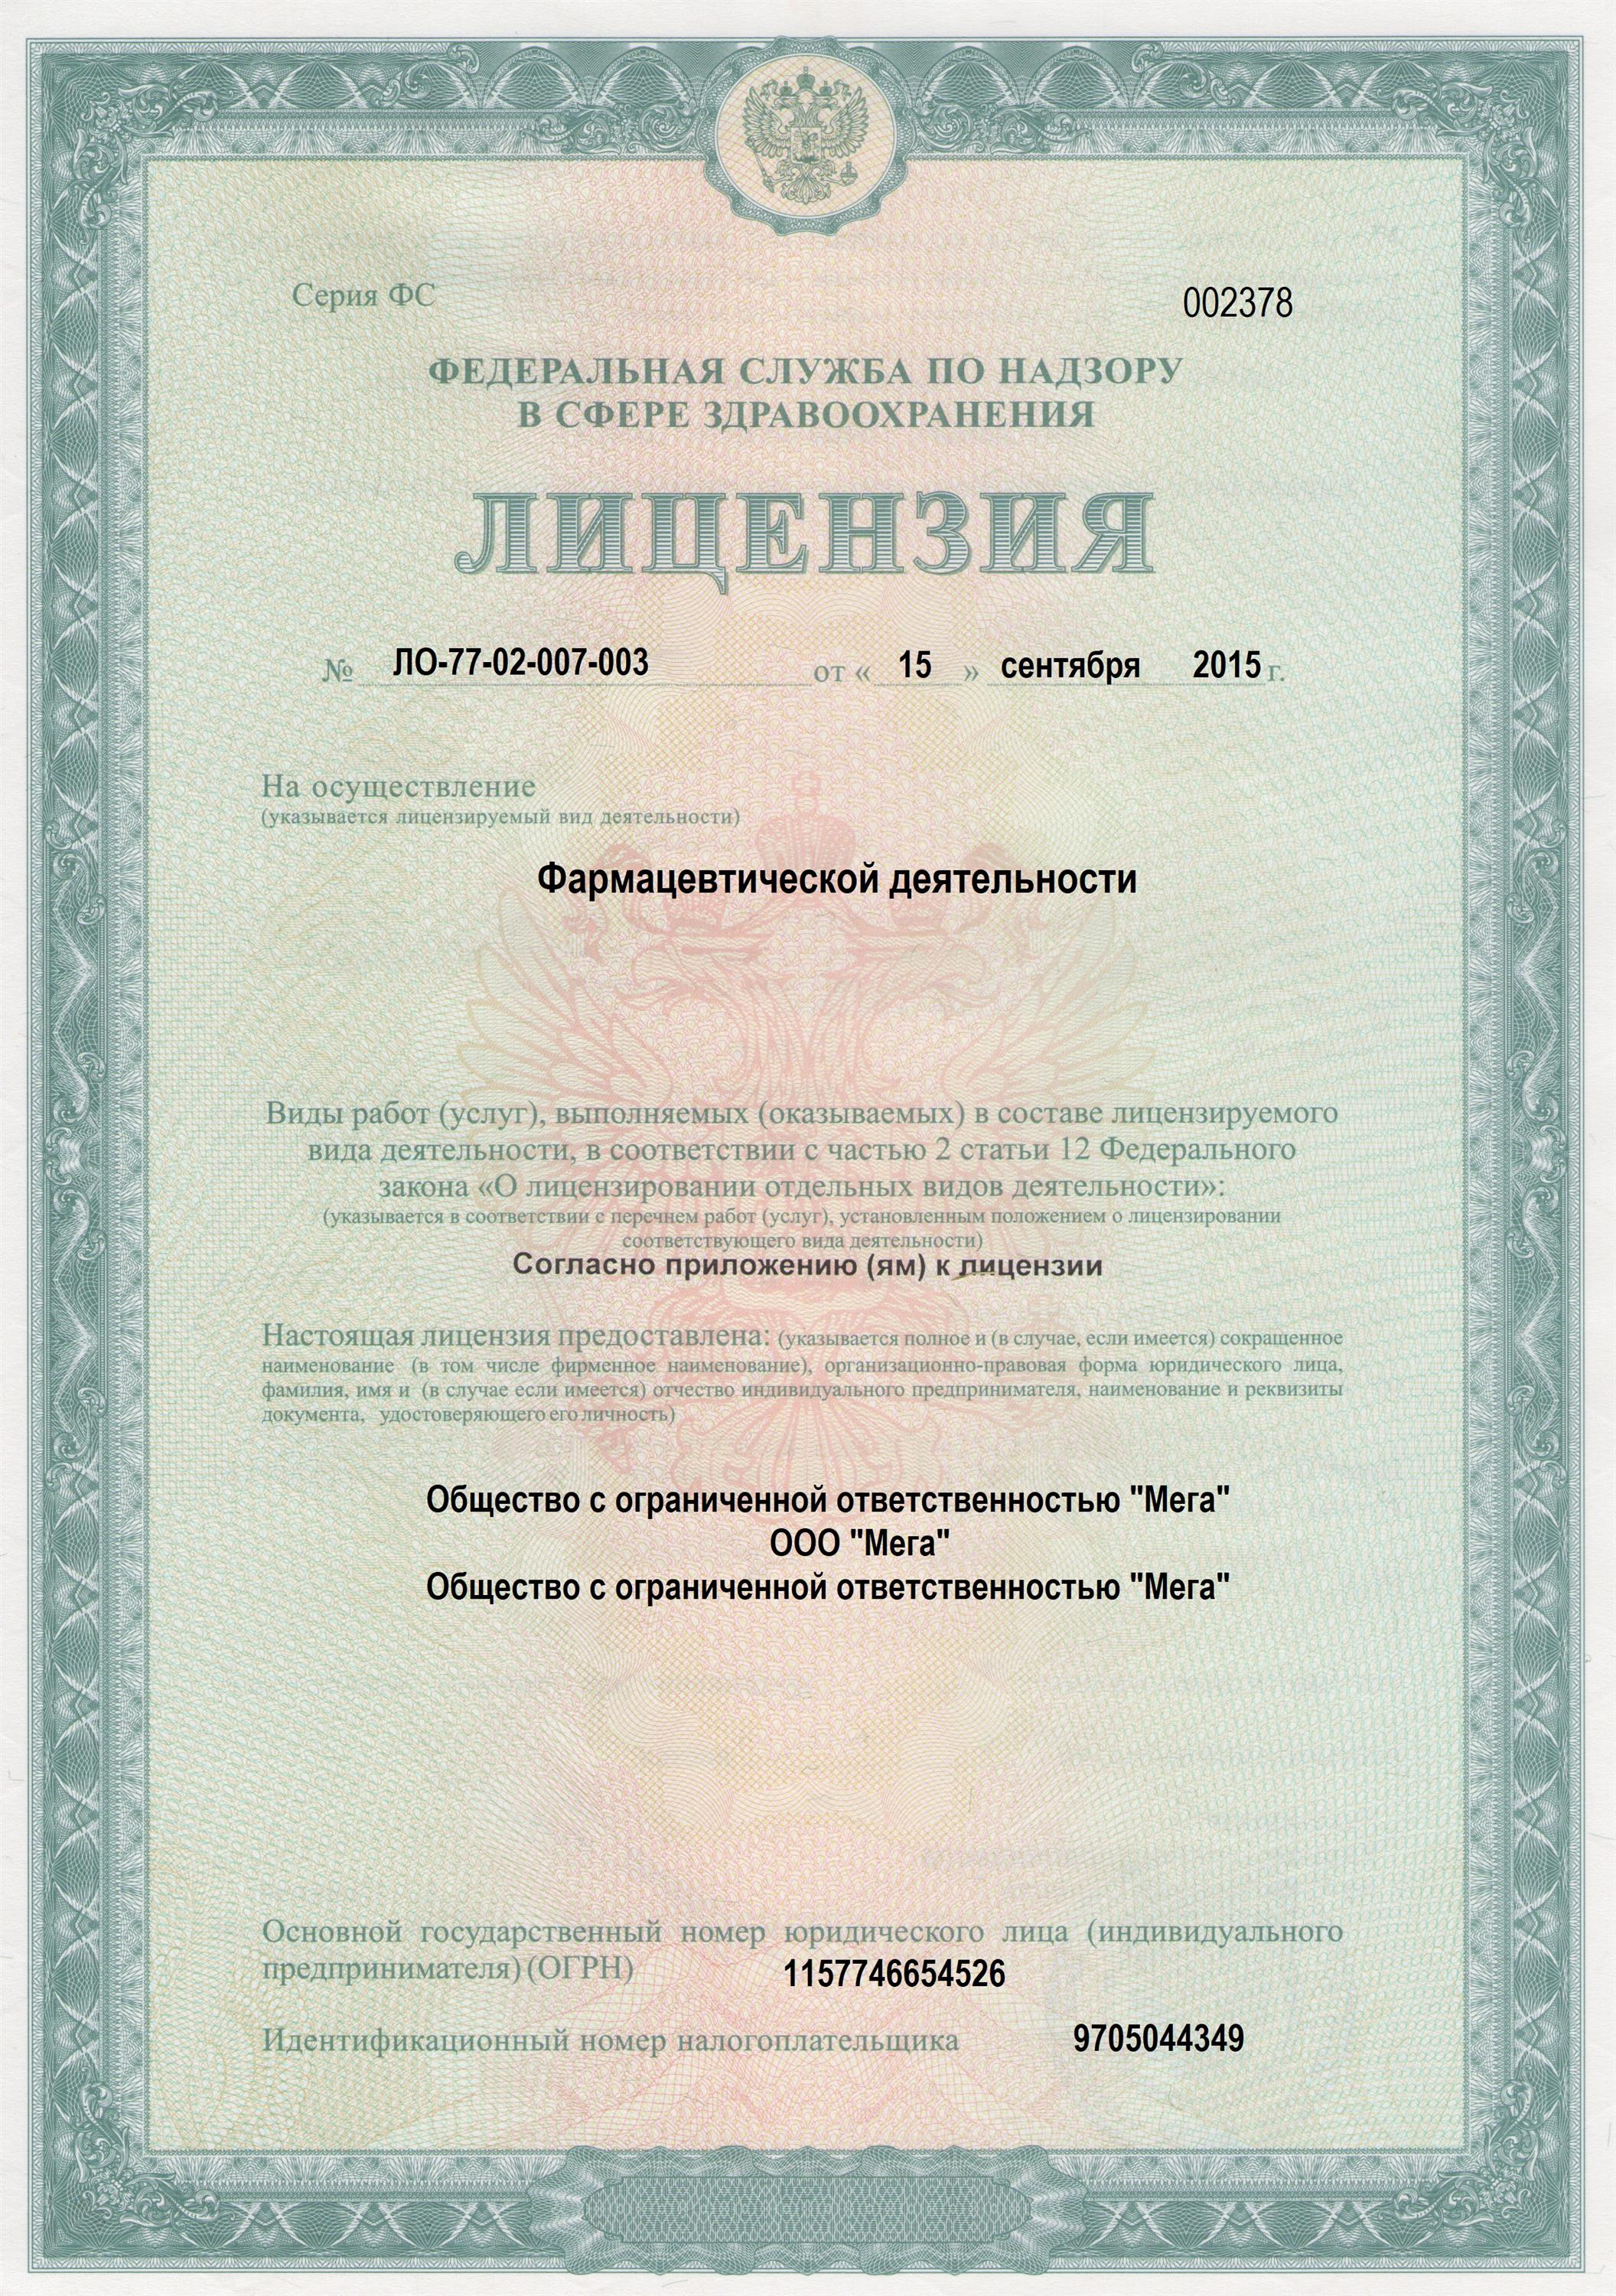 Регистрационные документы аптеки препаратов для потенции Apteka-market